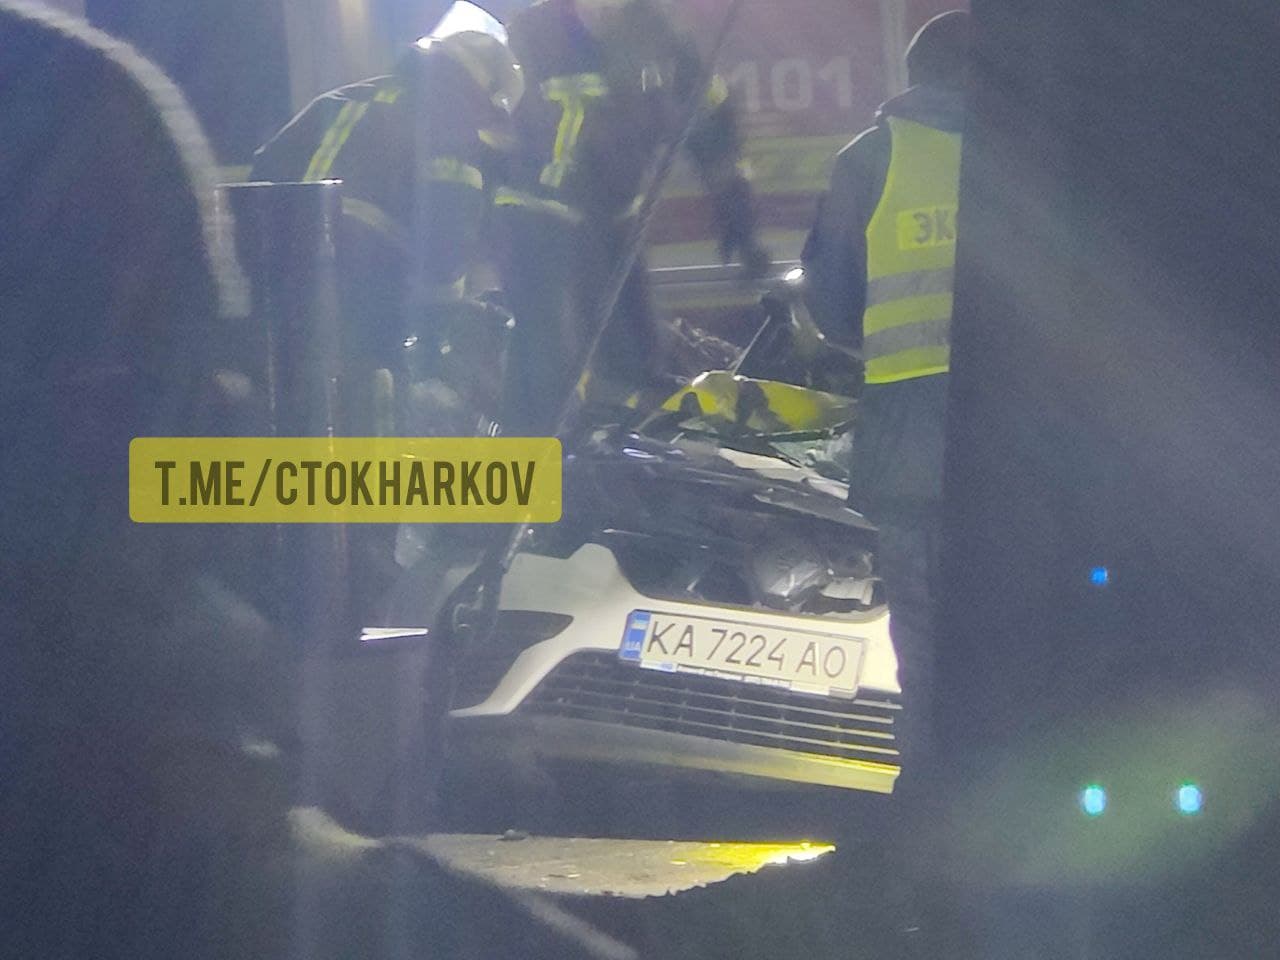 ДТП Харьков: На окружной в массовой аварии перевернулась фура и раздавлено такси